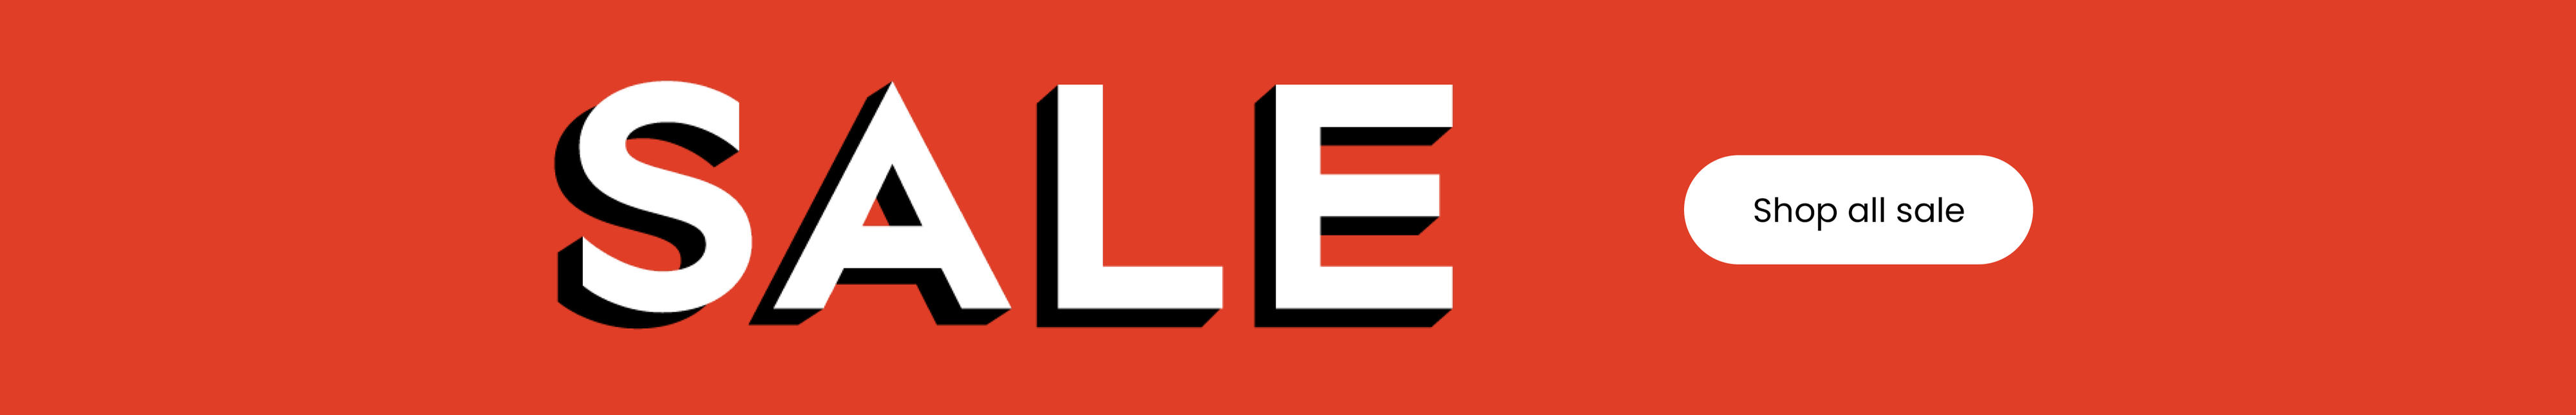 Sale storefront header banner_ENGLISH